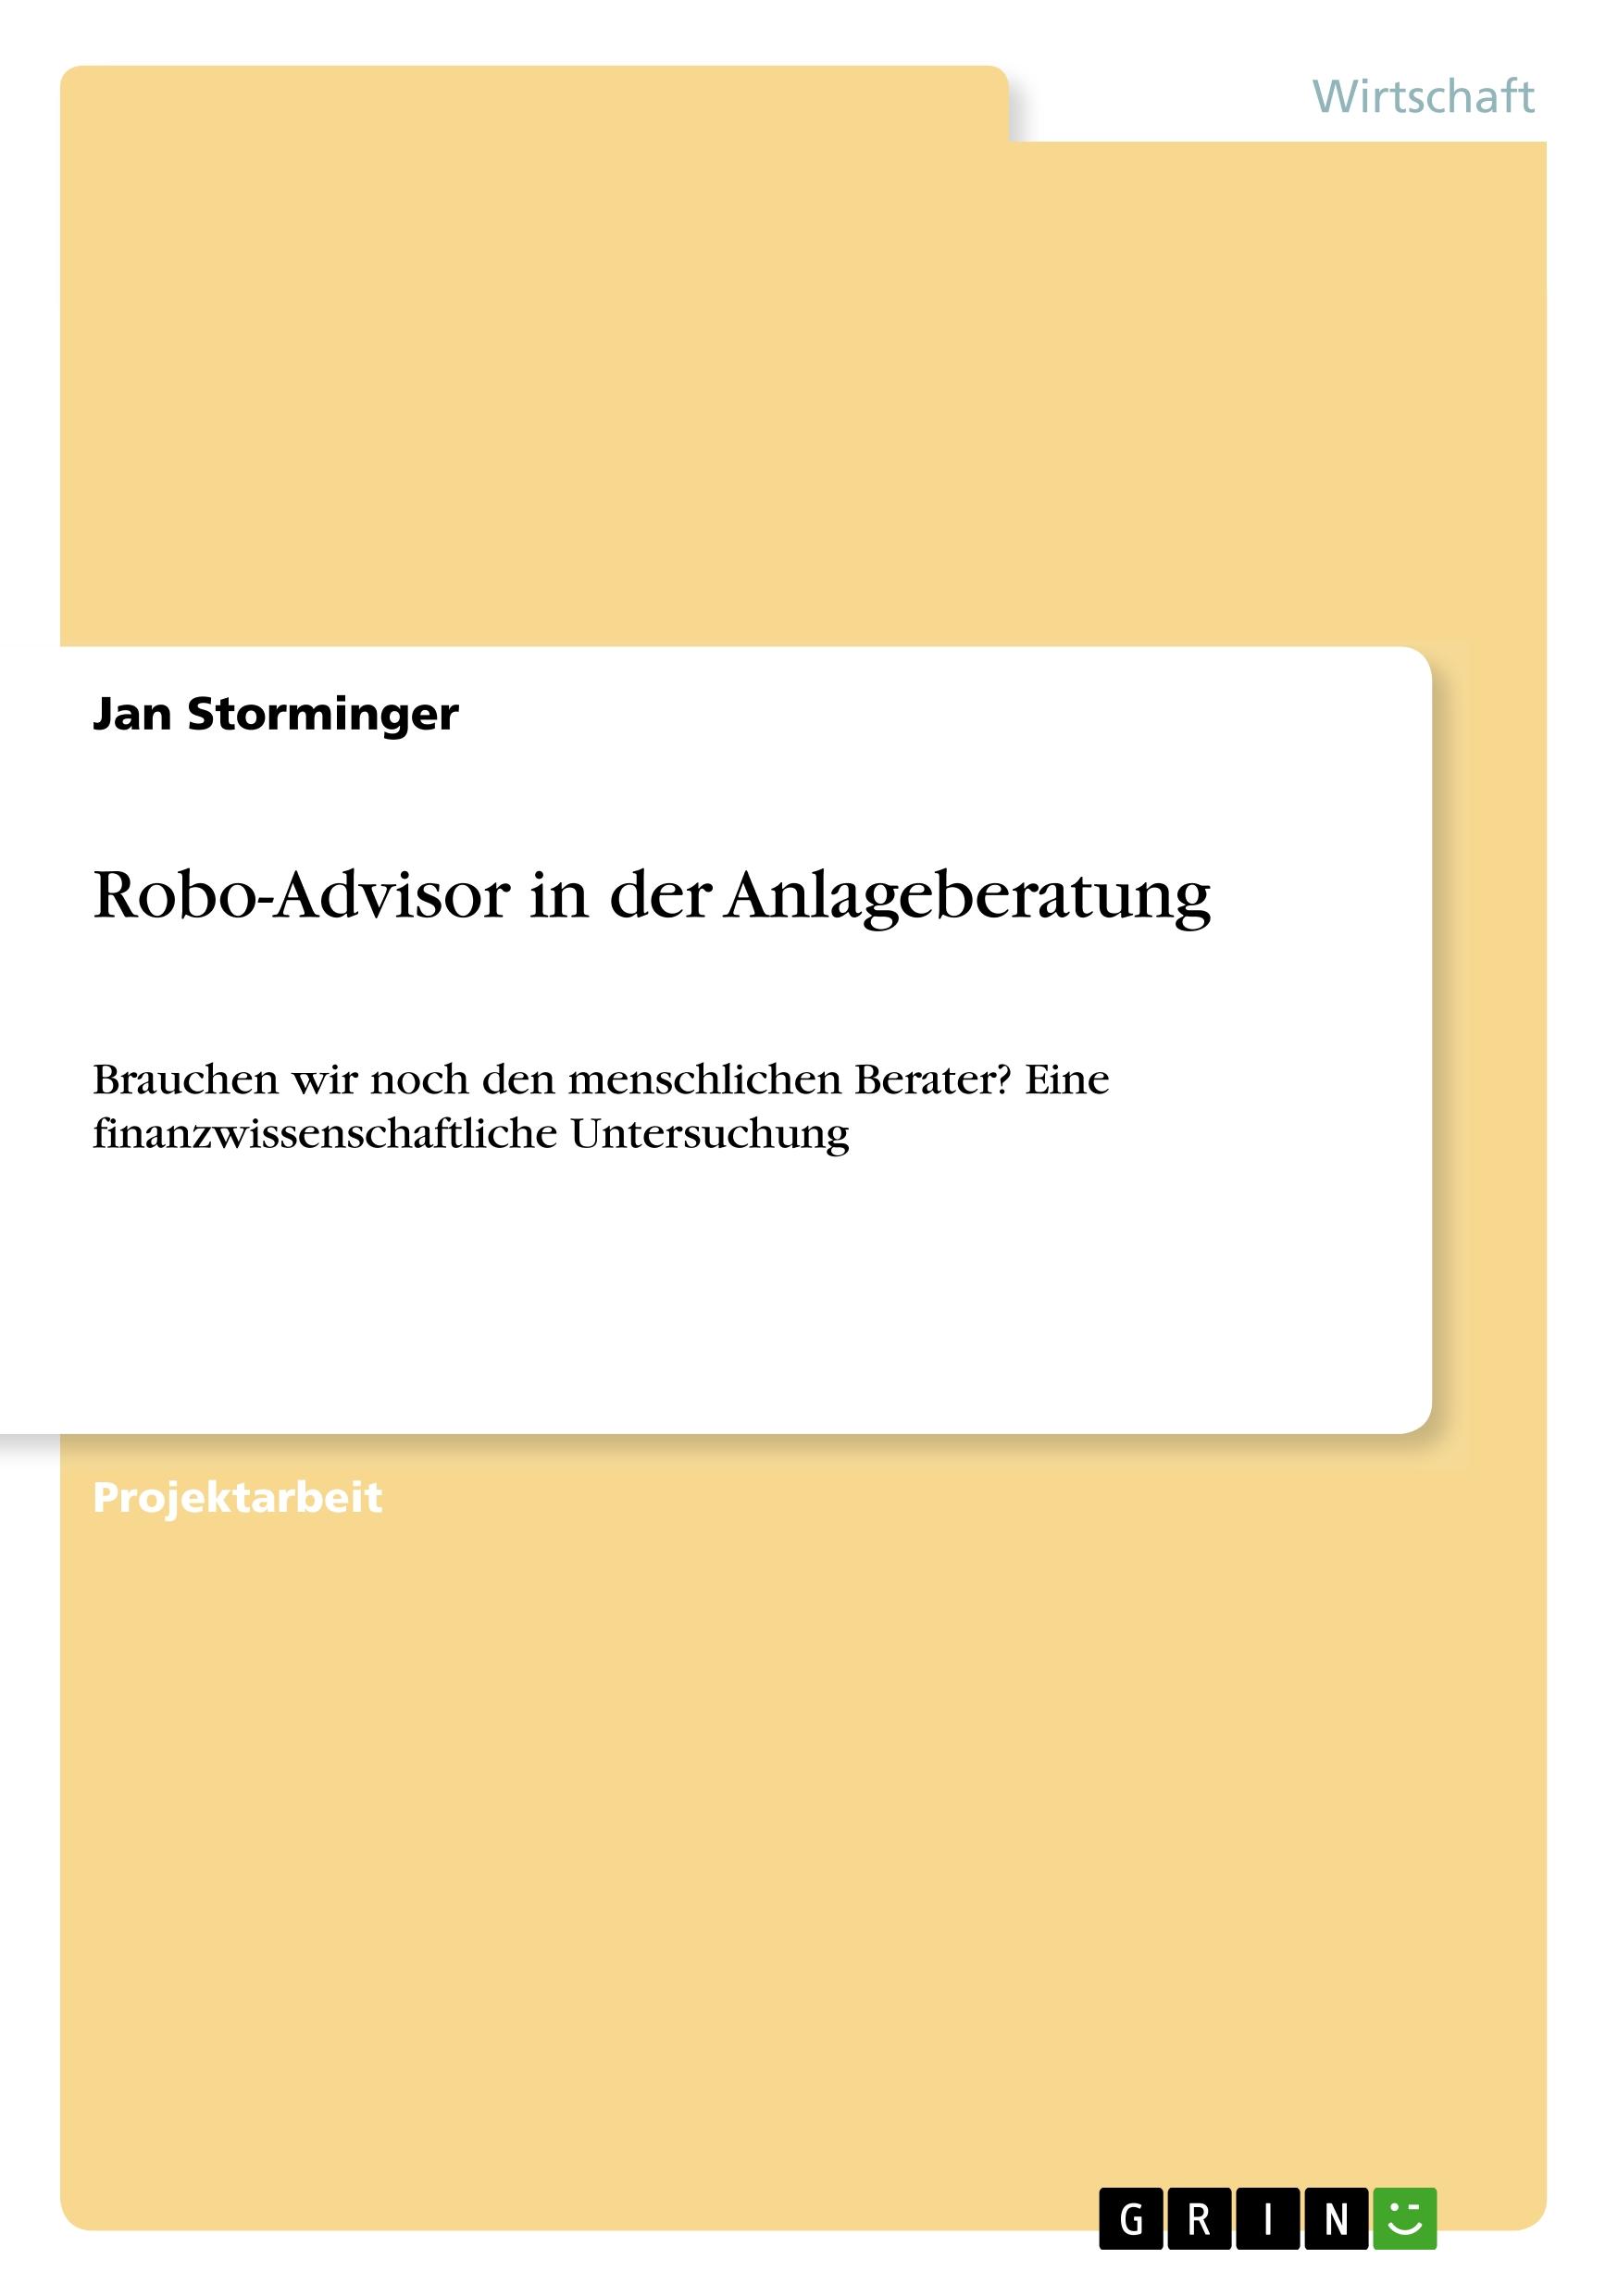 Robo-Advisor in der Anlageberatung - Storminger, Jan